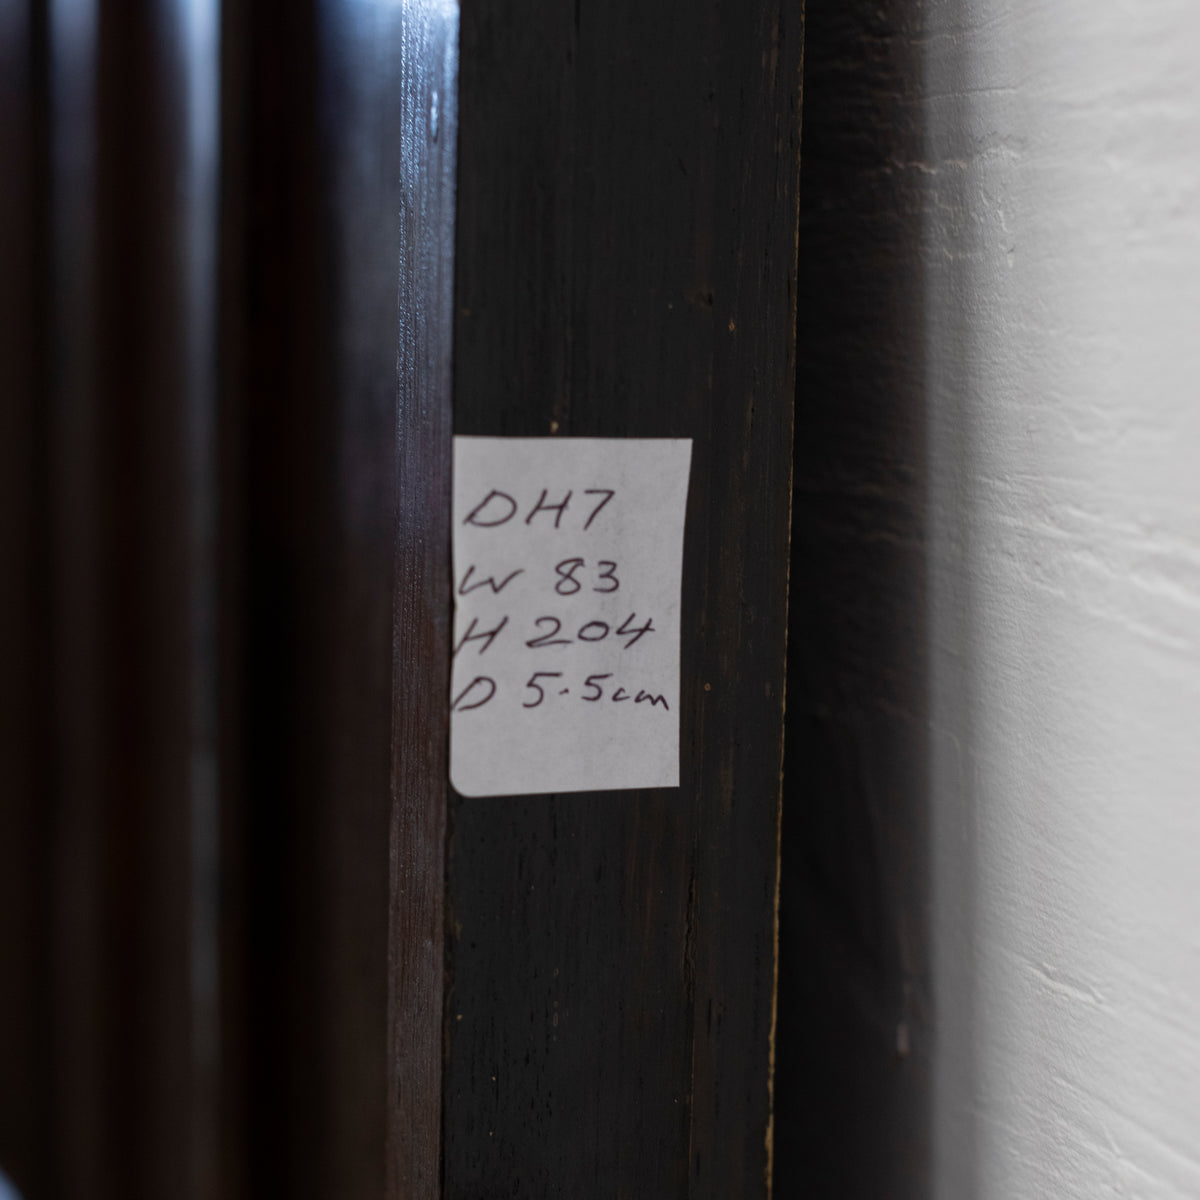 Antique Oak Latch Door - 204cm x 83cm | The Architectural Forum